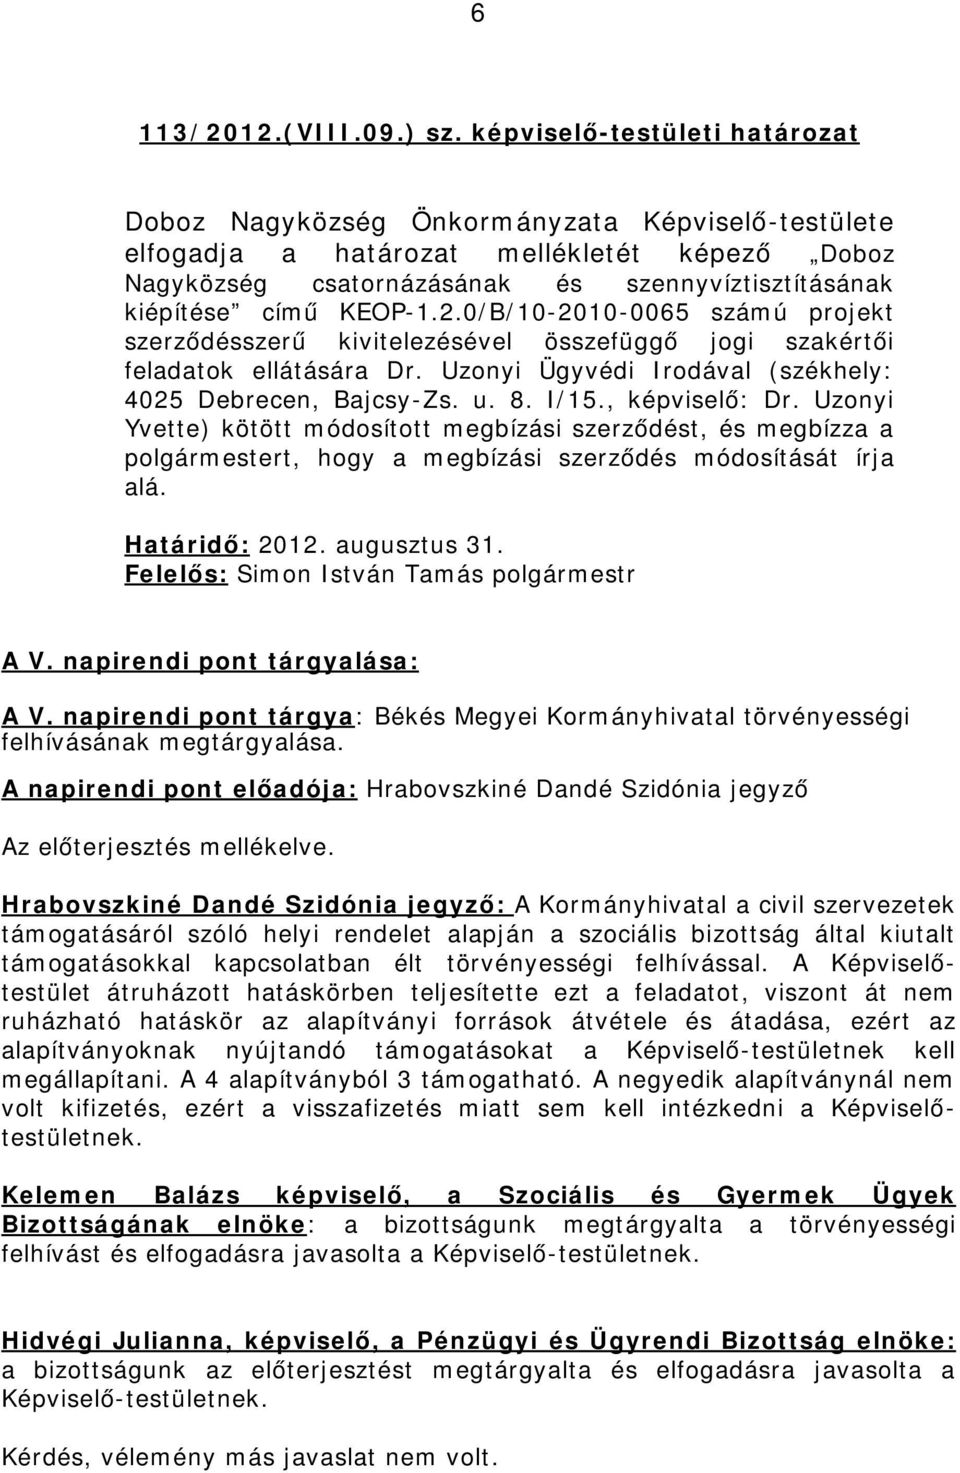 KEOP-1.2.0/B/10-2010-0065 számú projekt szerződésszerű kivitelezésével összefüggő jogi szakértői feladatok ellátására Dr. Uzonyi Ügyvédi Irodával (székhely: 4025 Debrecen, Bajcsy-Zs. u. 8. I/15.